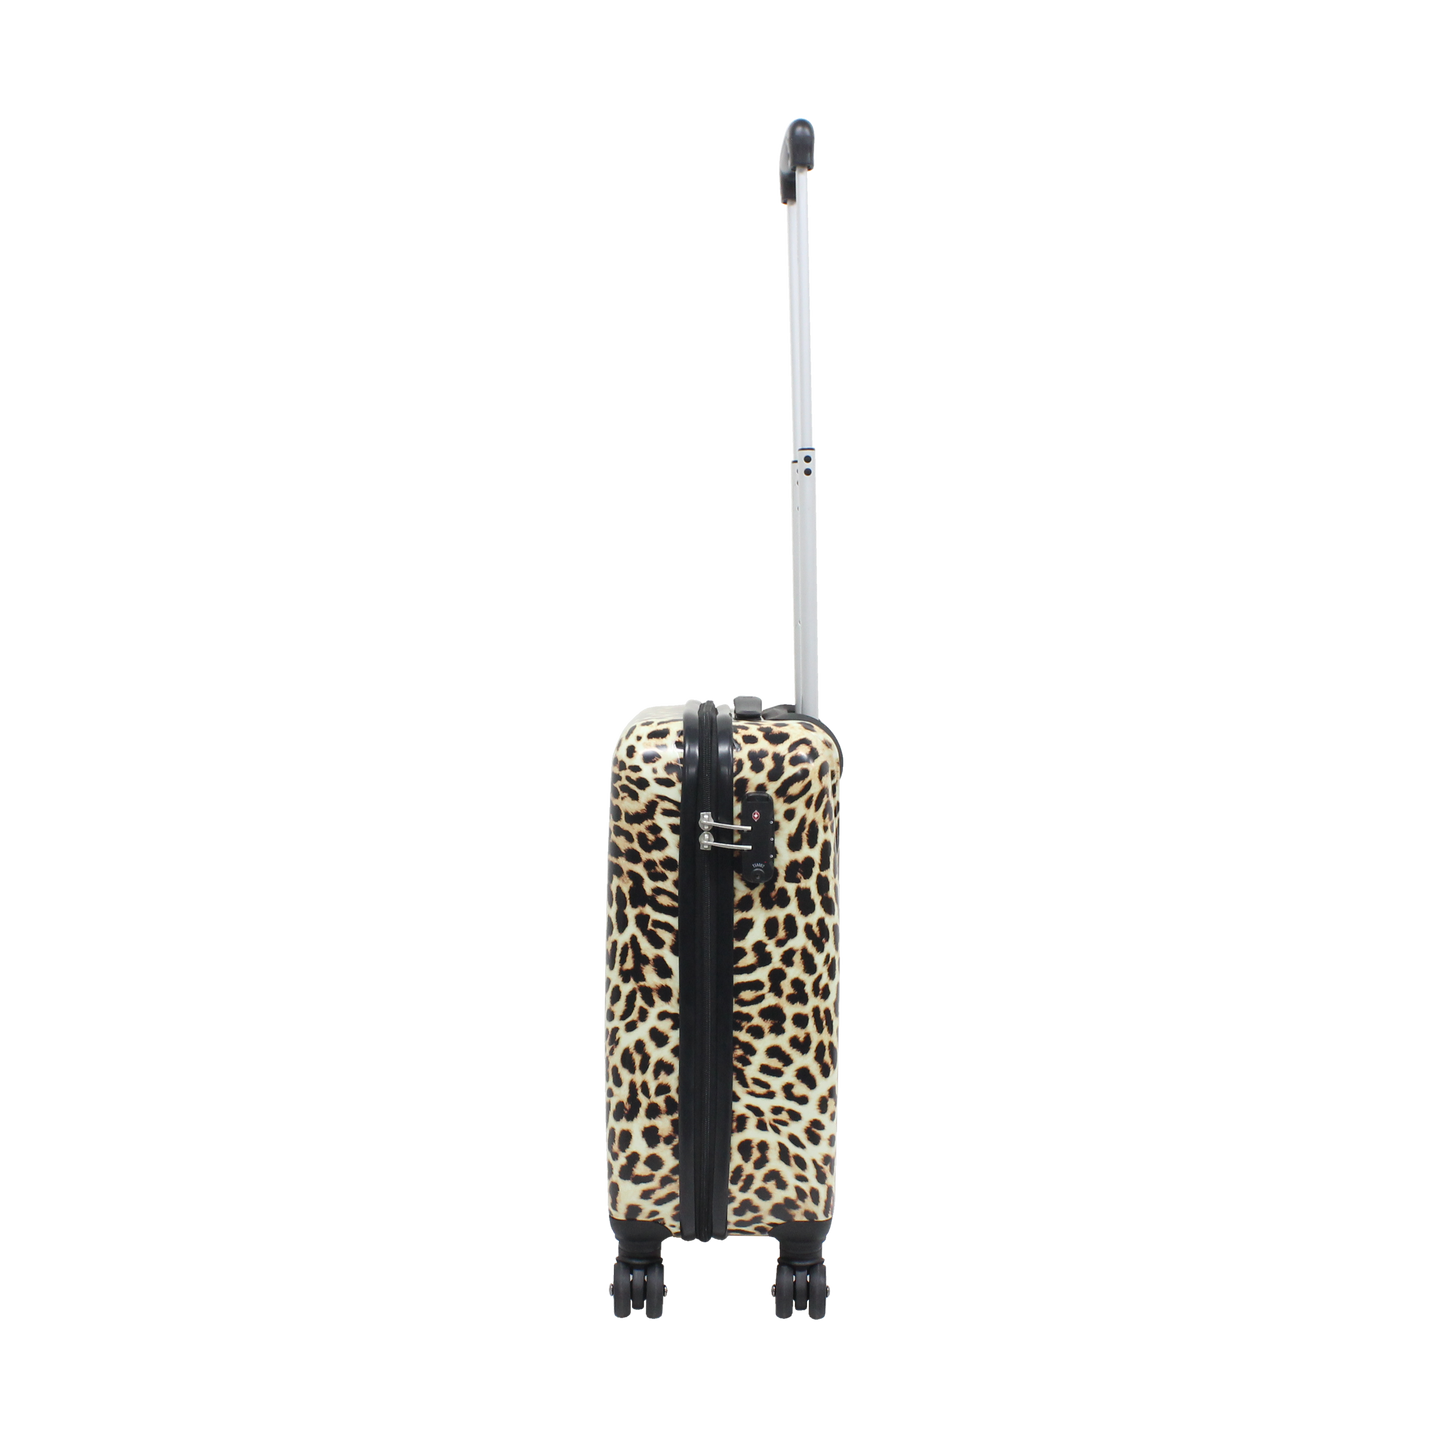 Valise rigide pour bagage à main Saxoline / Trolley / Valise de voyage - 55 cm (Petite) - Imprimé léopard